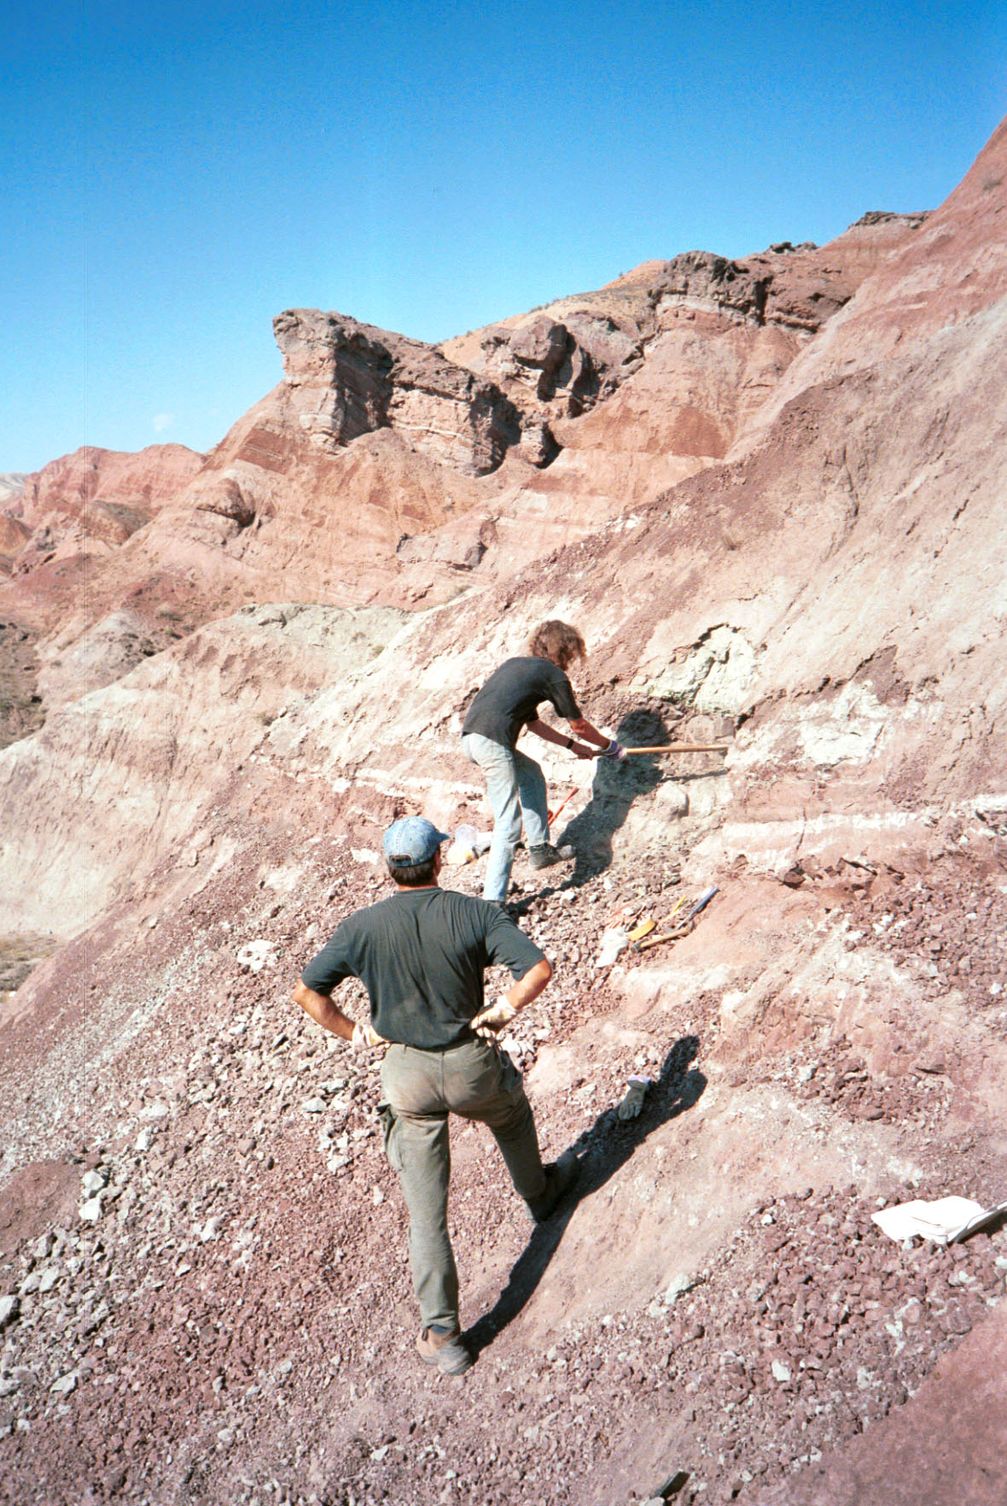 Grabung im Junggar-Becken in Nordwest-China im Jahr 2001: Fundstelle des Dinosaurierknochens mit Bissspuren.
Quelle: Foto: Andreas Matzke (idw)